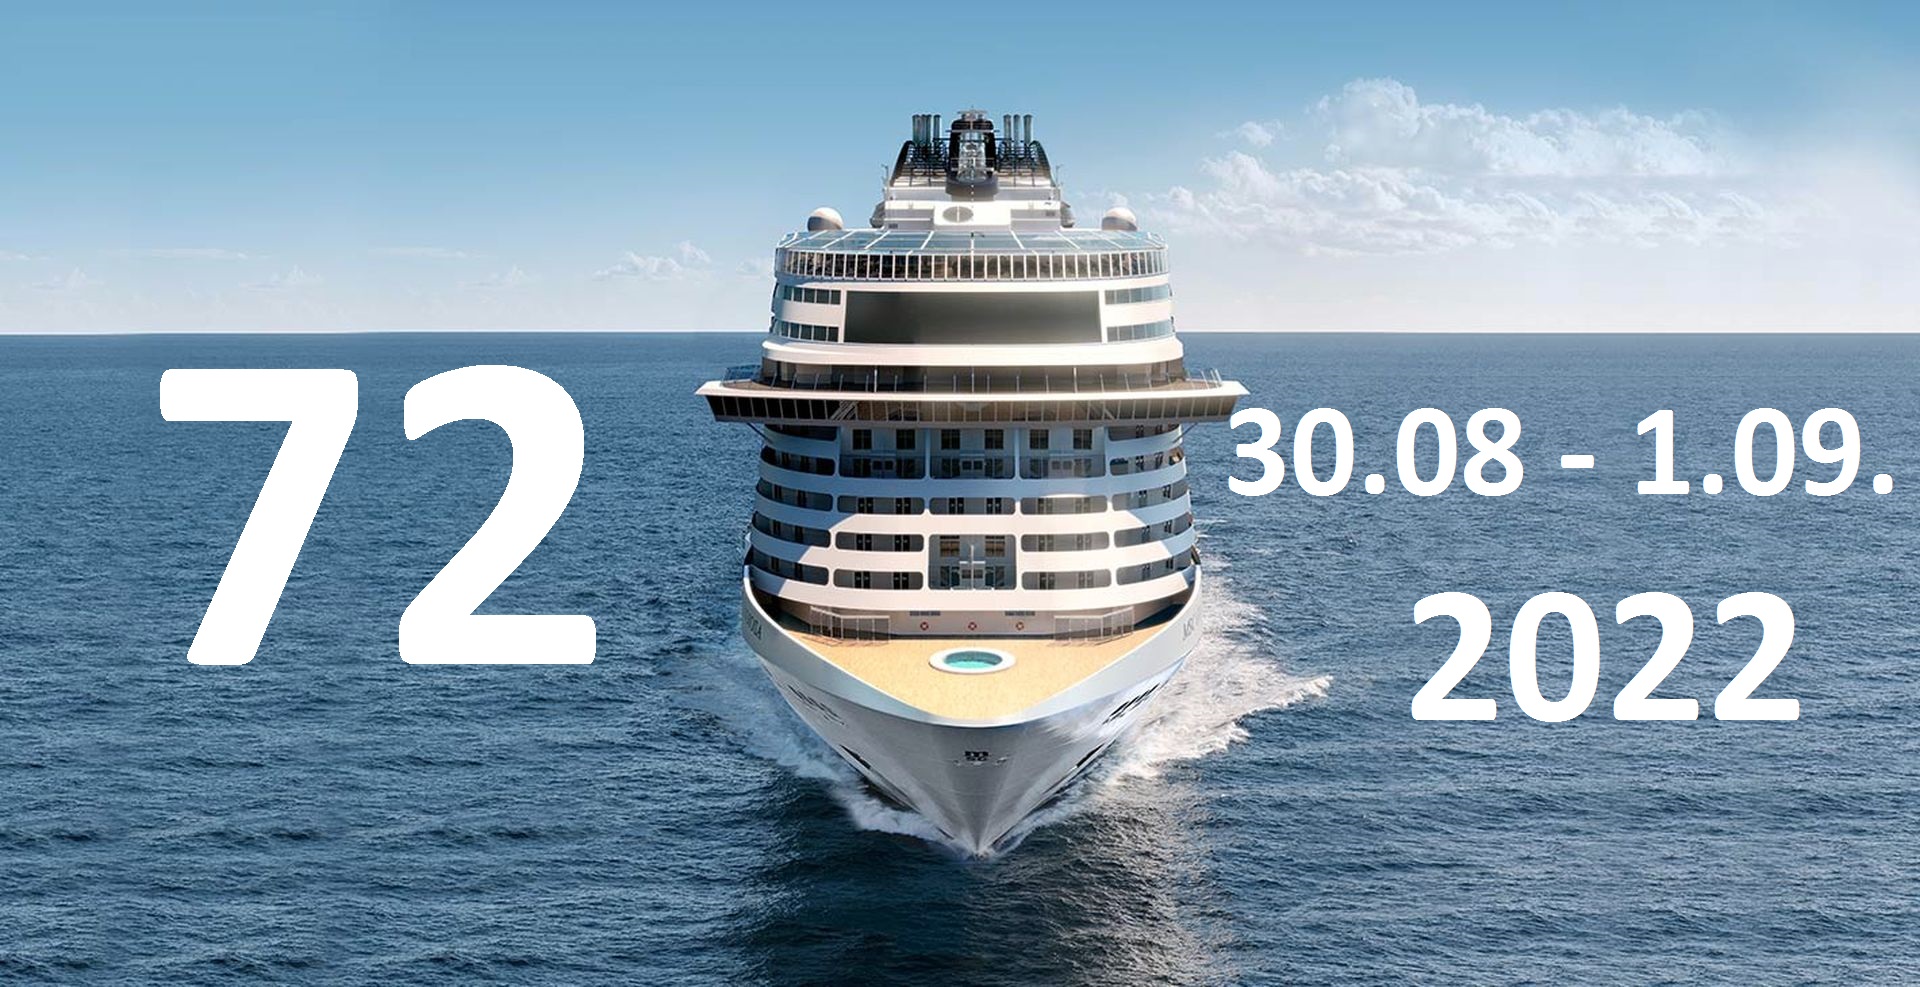 MSC Cruises - Акция "72 часа" суперцен на круизы сентября